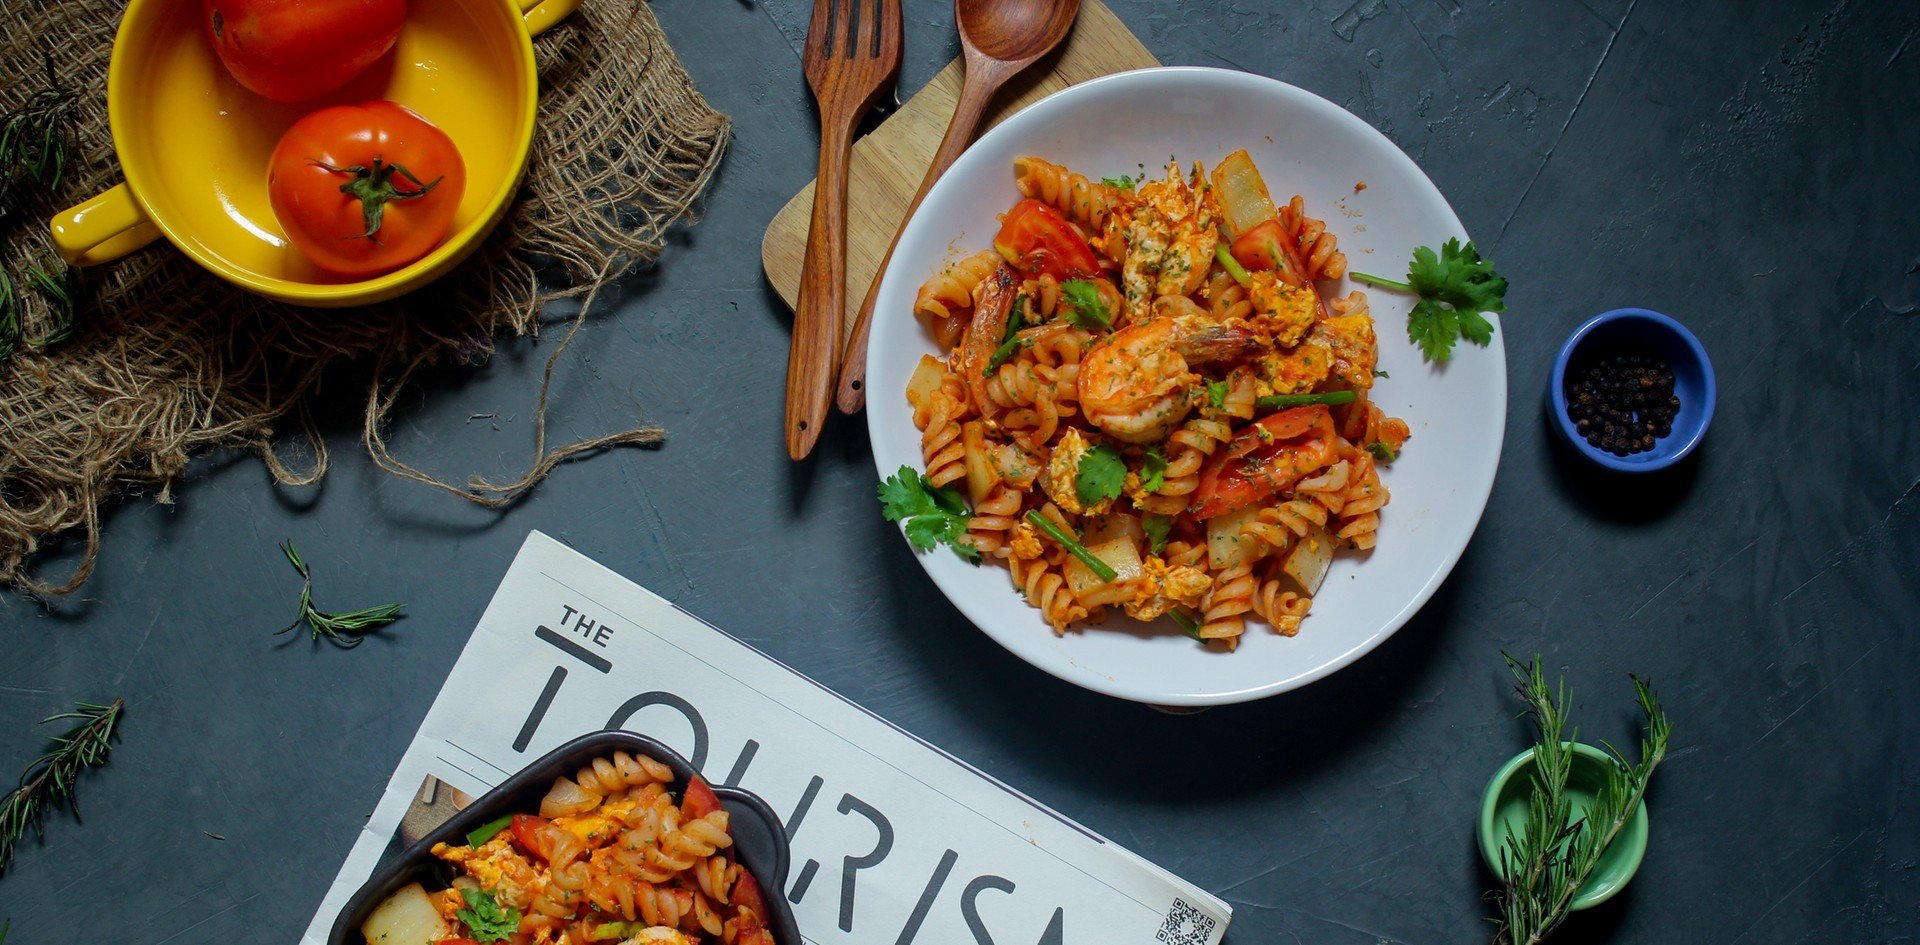 วิธีทำ “ผัดมักกะโรนีกุ้ง” เมนูอาหารอิตาเลียน ฟินจนไม่อยากแบ่งใคร!